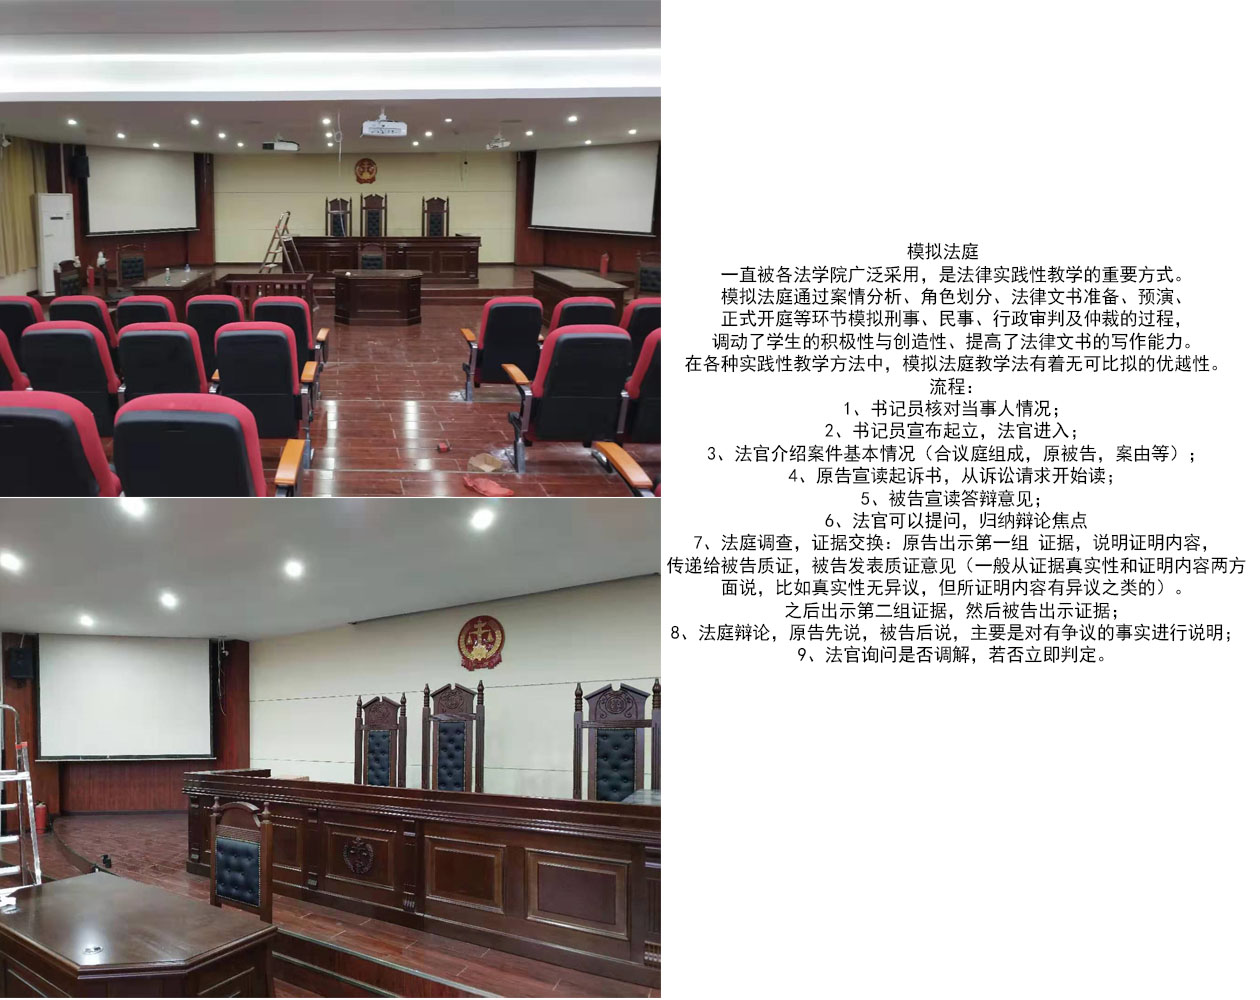 贵州省**大学模拟法庭建设